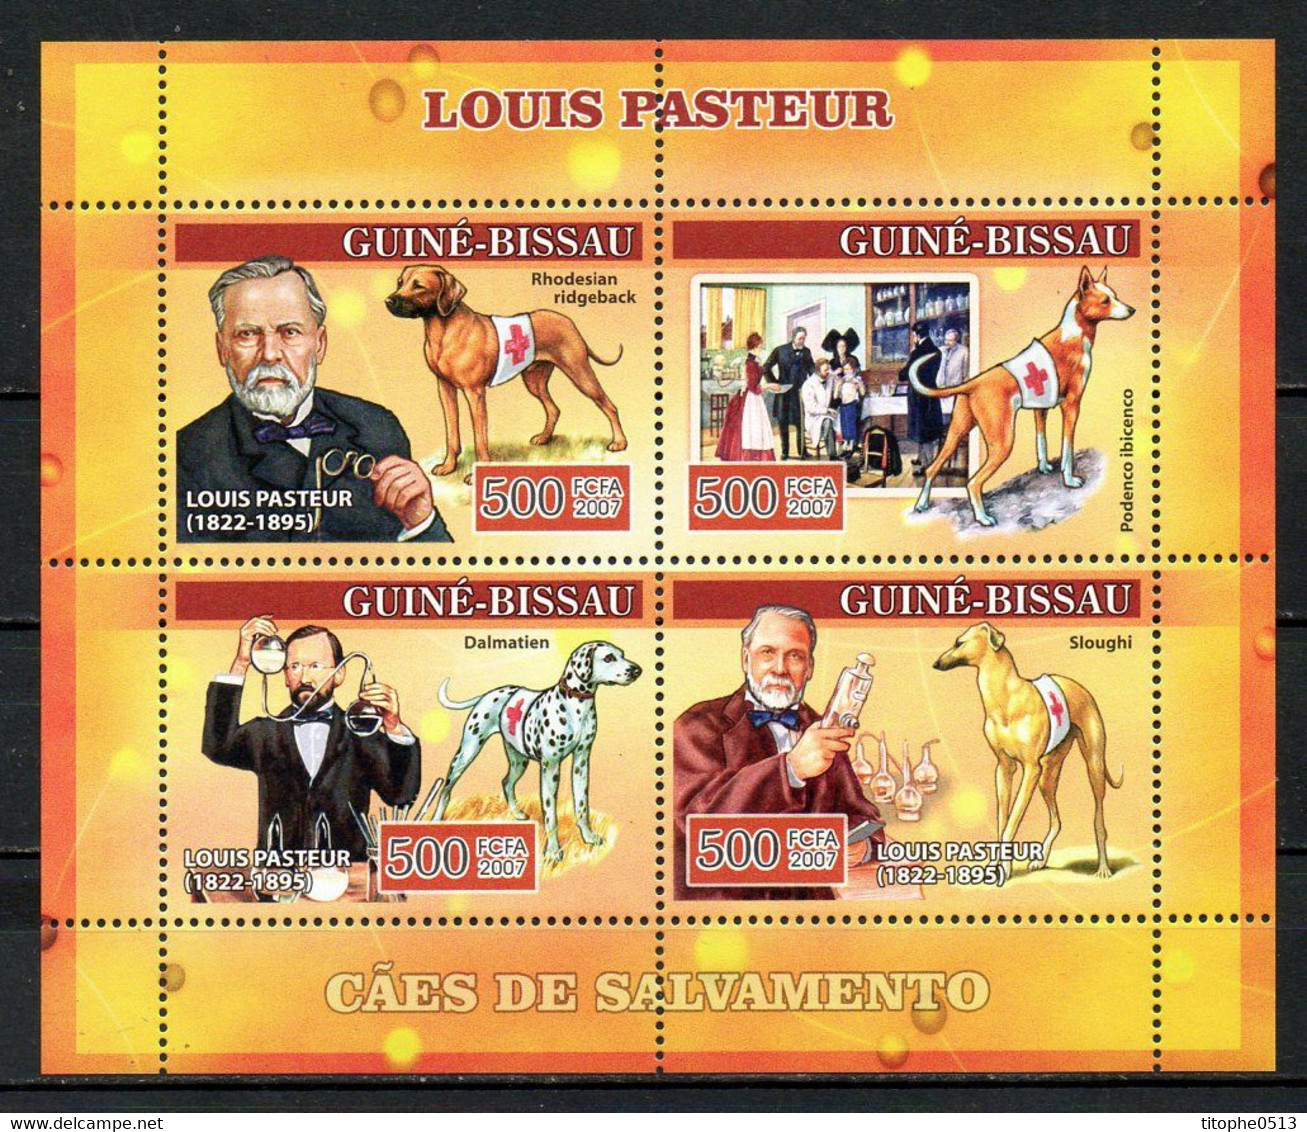 GUINEE-BISSAU. N°2310-3 De 2007. Pasteur/Chiens. - Louis Pasteur